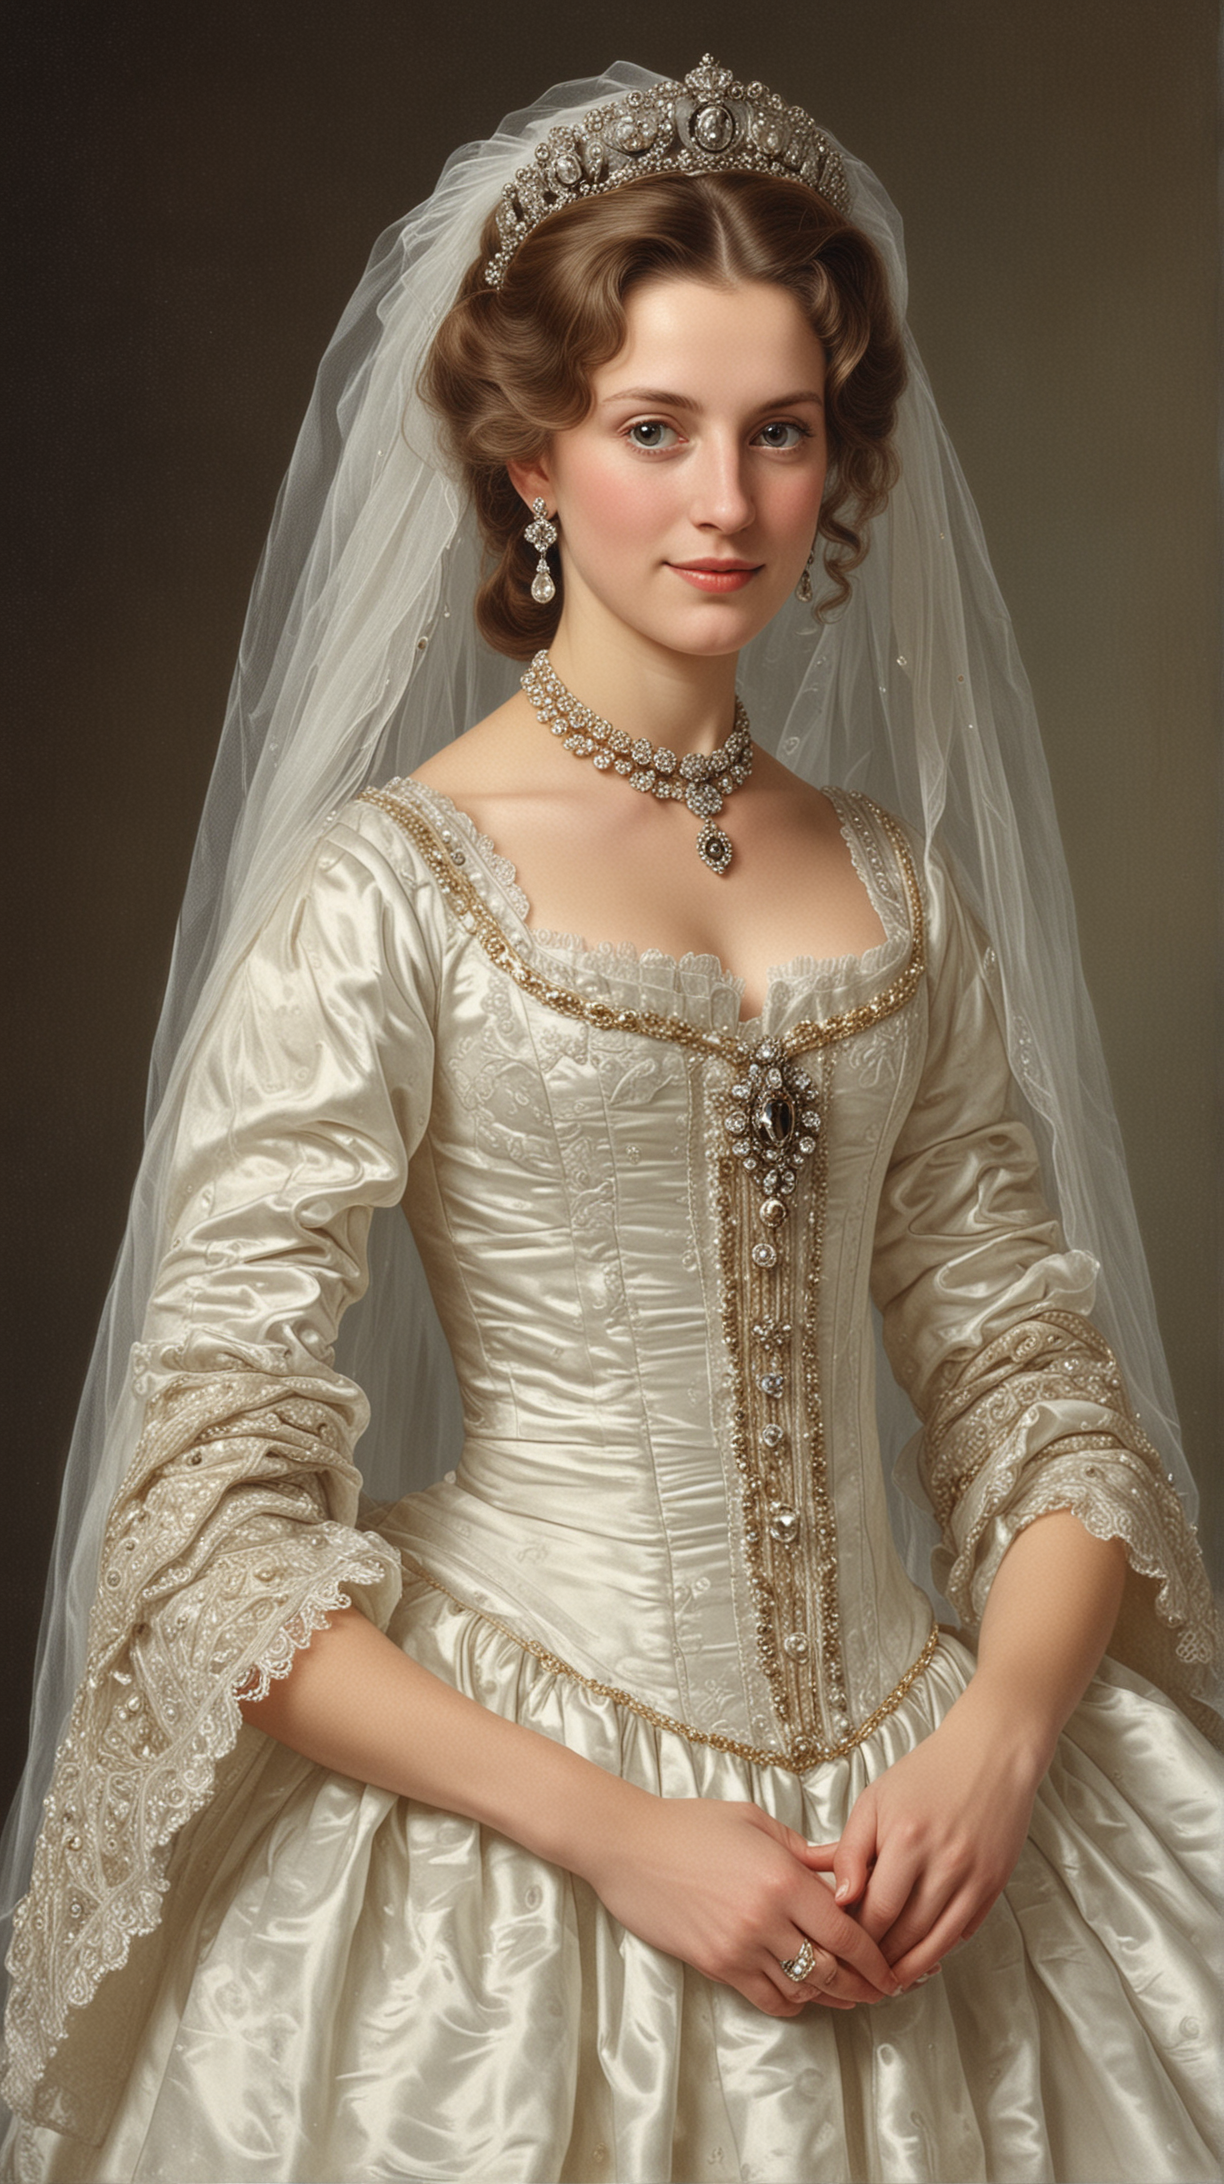 Archduchess Marie-Louise of Austria